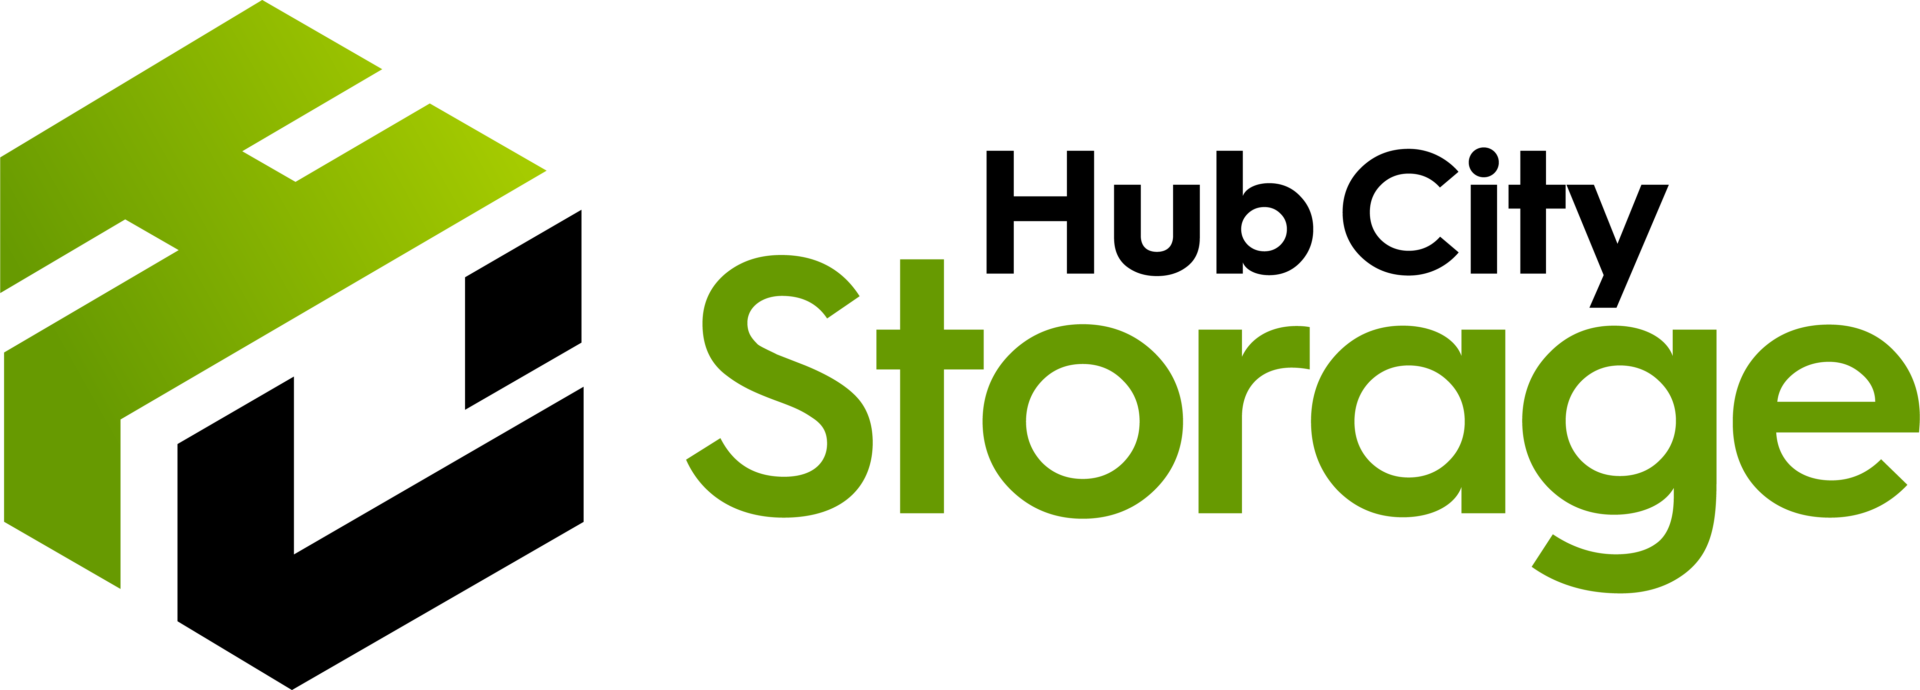 Hub City Storage logo